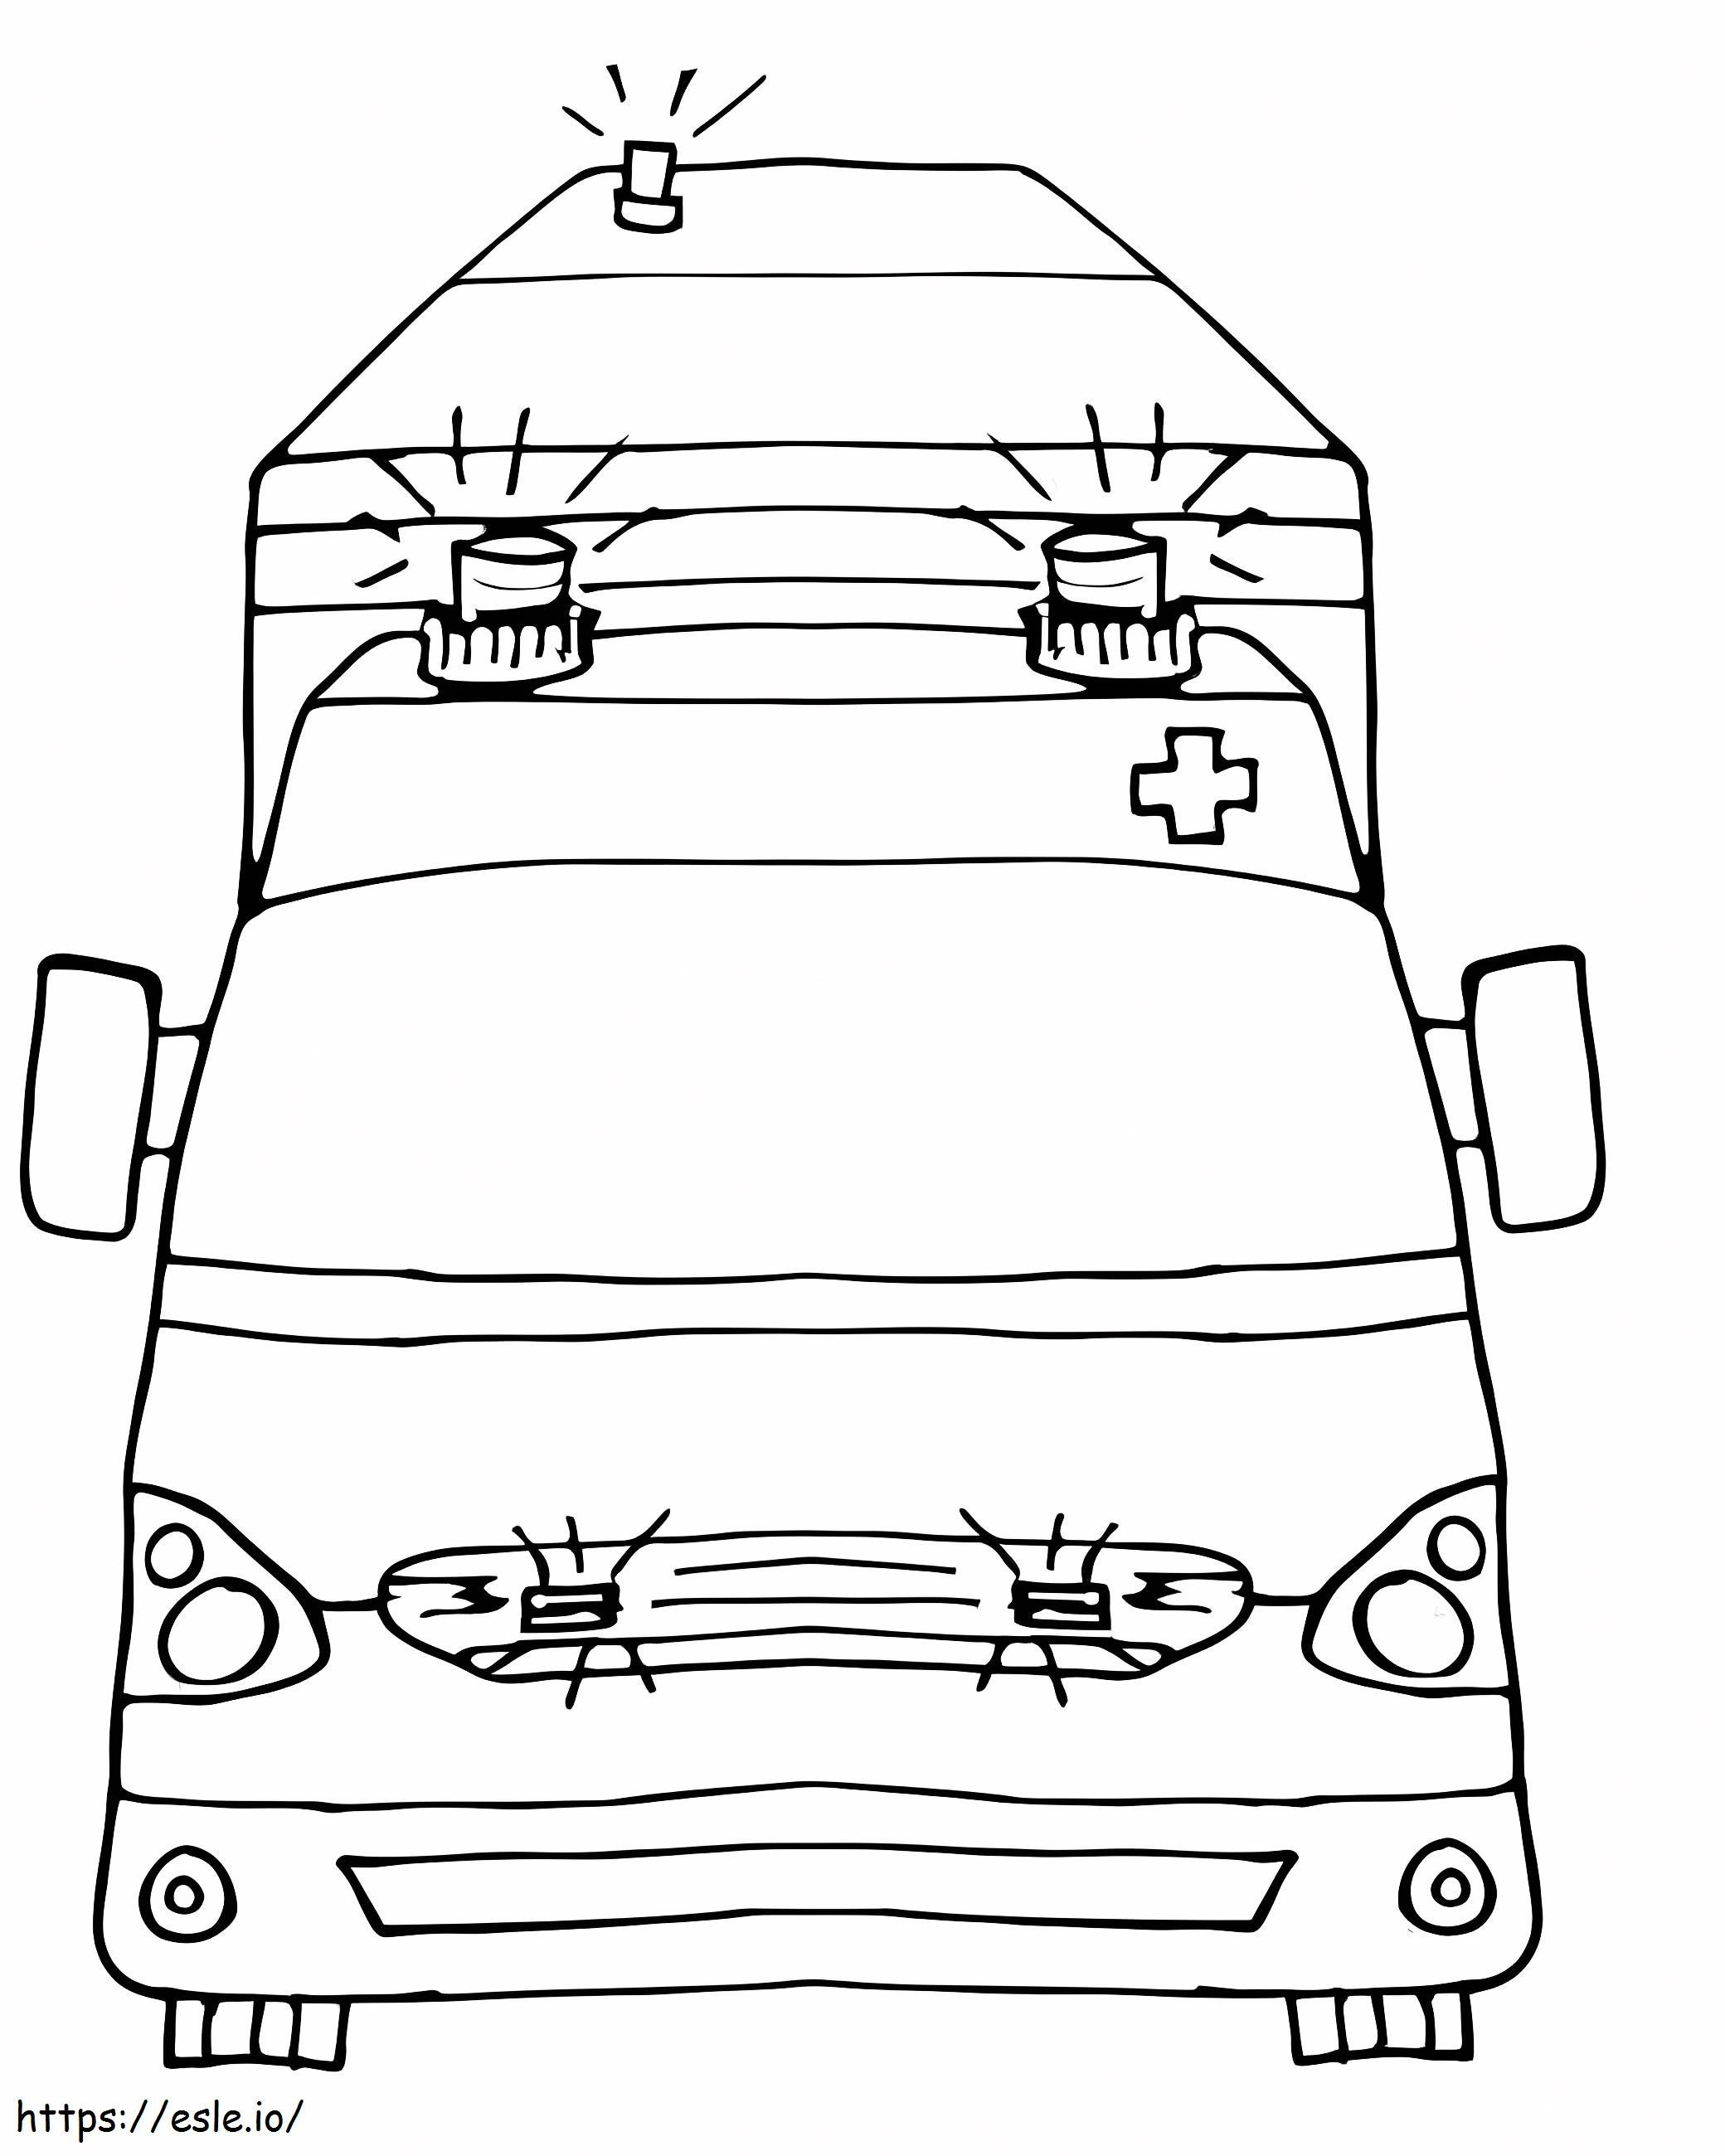 Ambulancia de dibujo básico para colorear